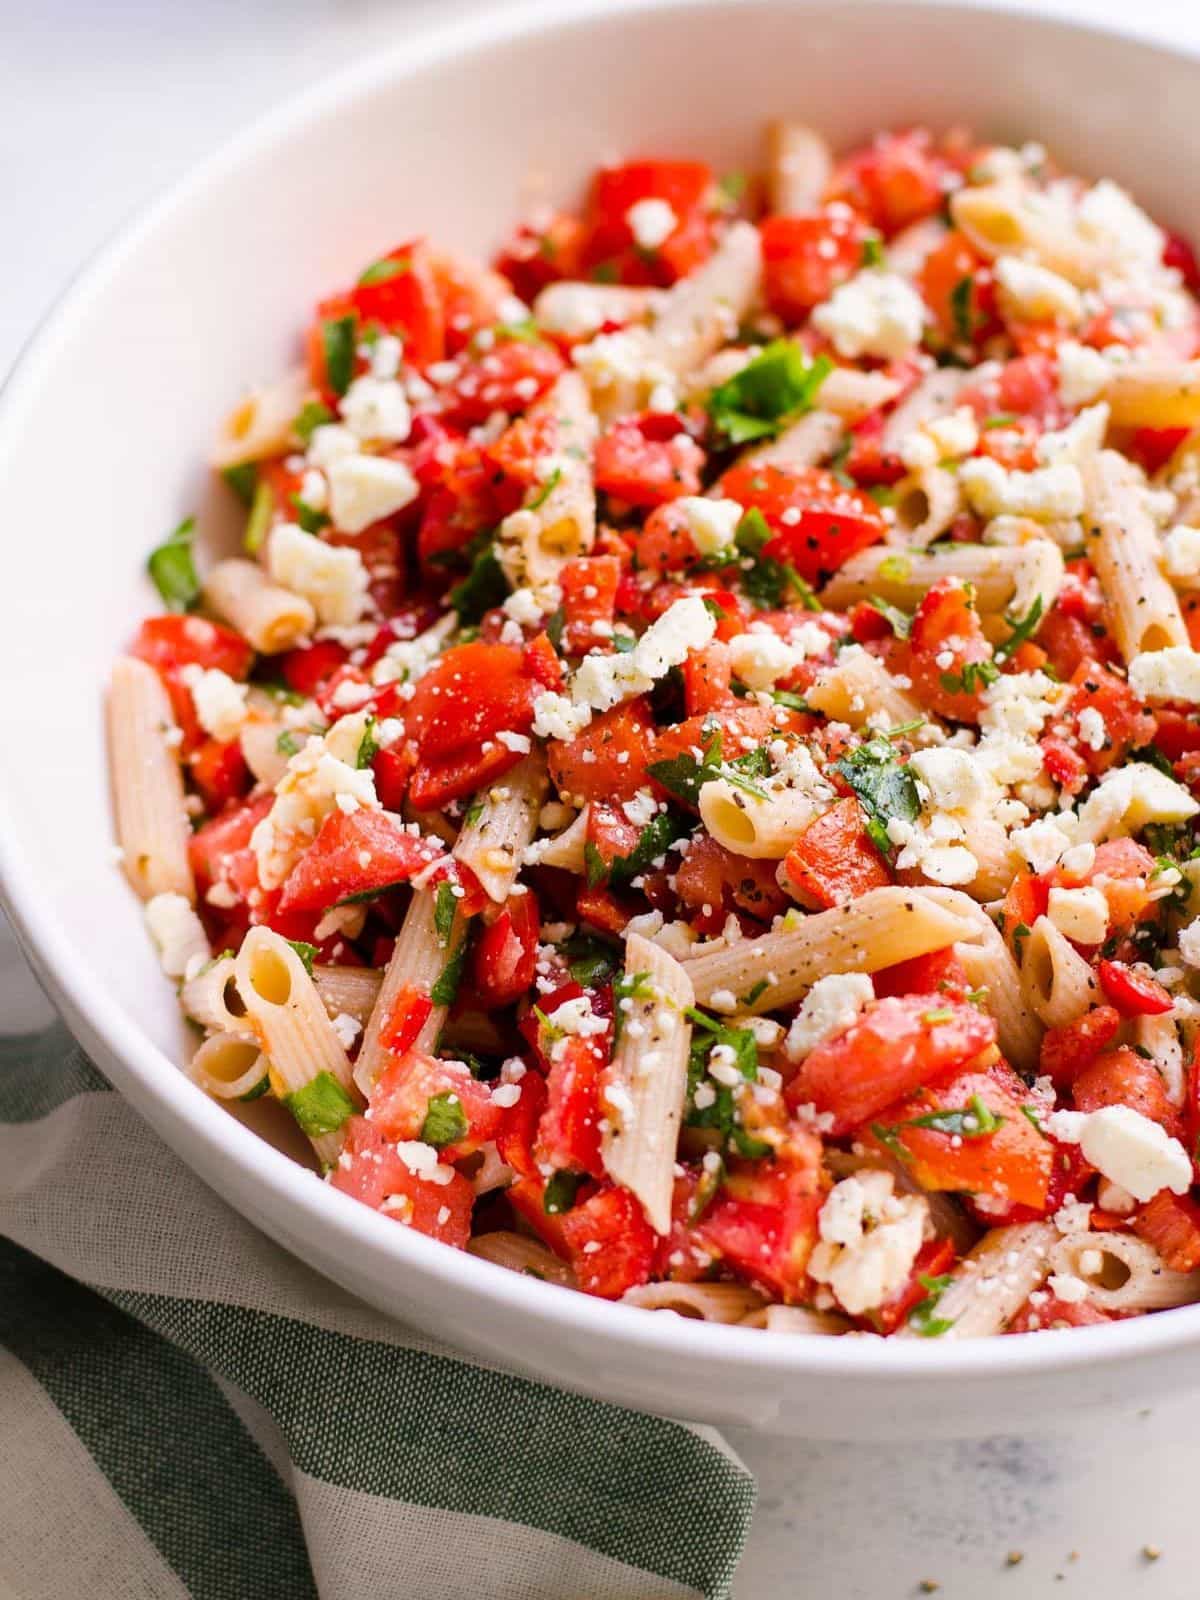 Tomato, basil, feta pasta salad in a white bowl